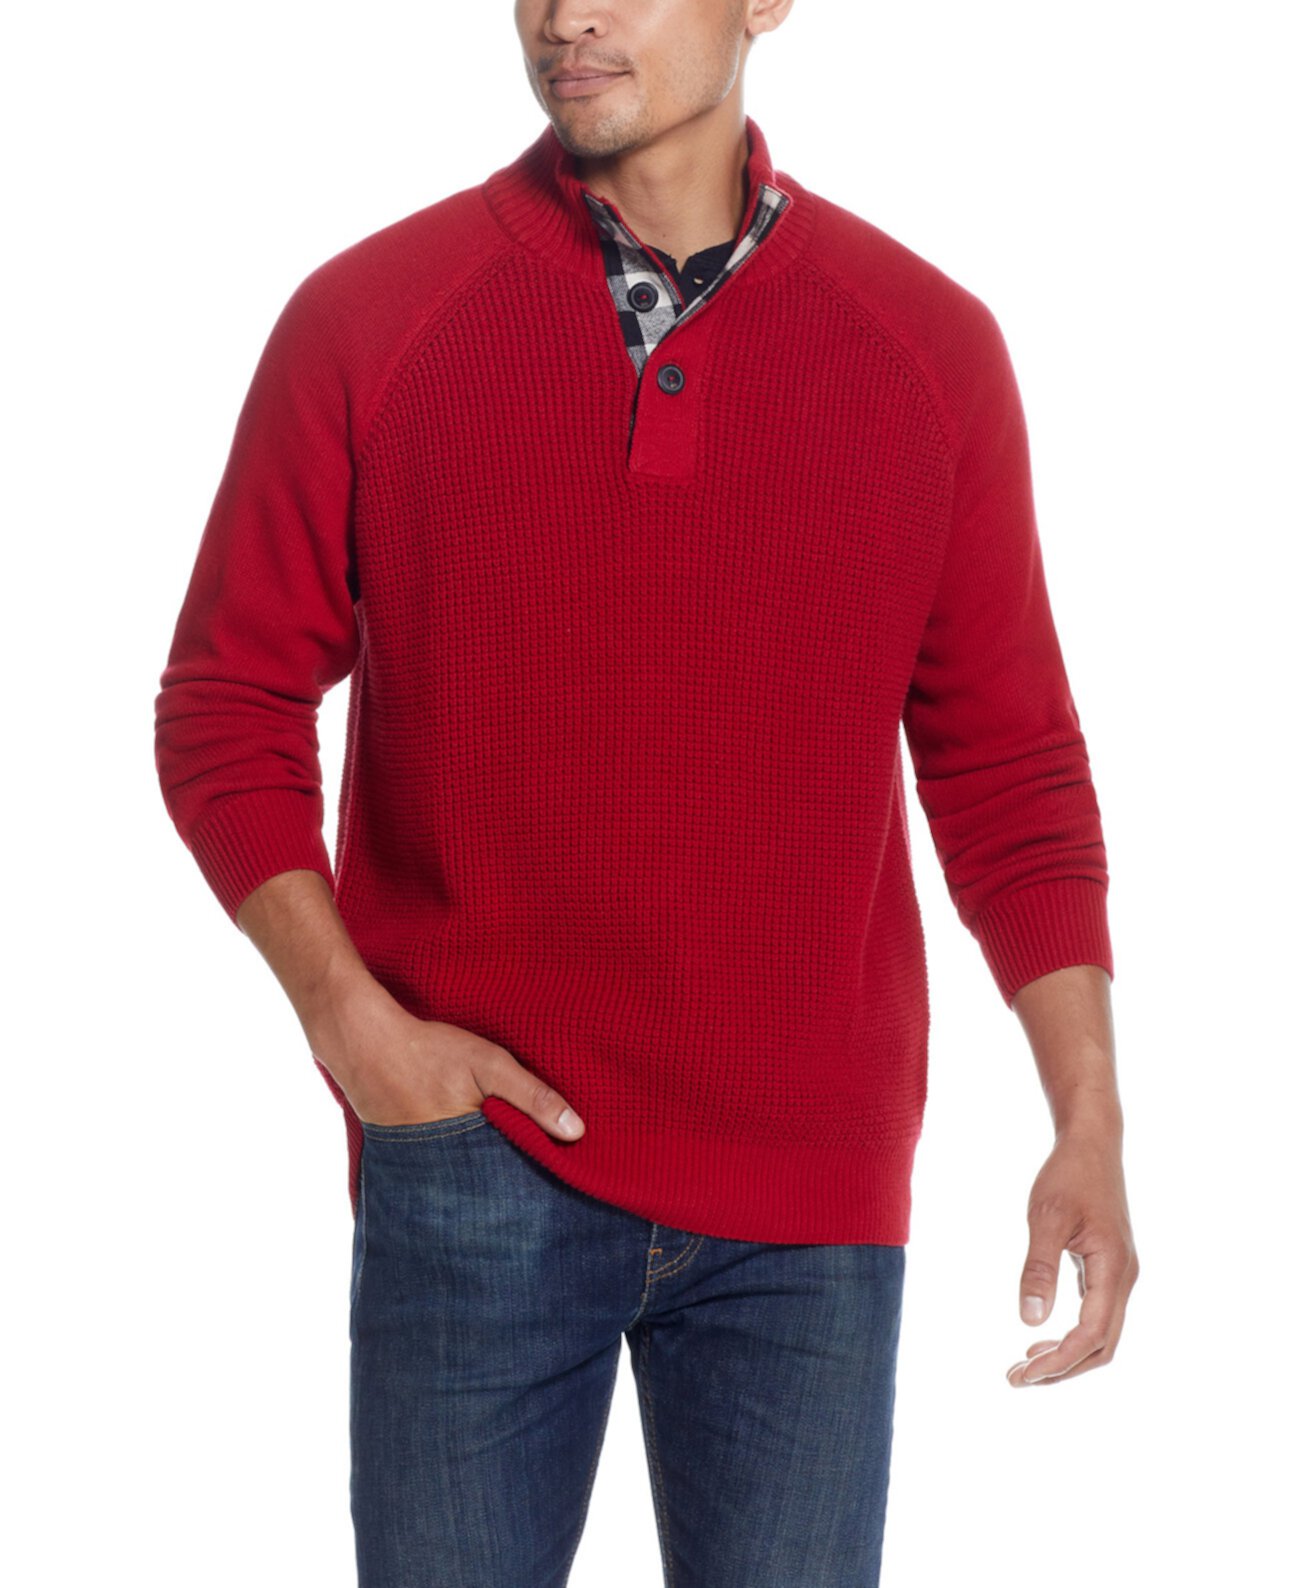 Мужской текстурированный свитер с воротником на пуговицах Weatherproof Vintage